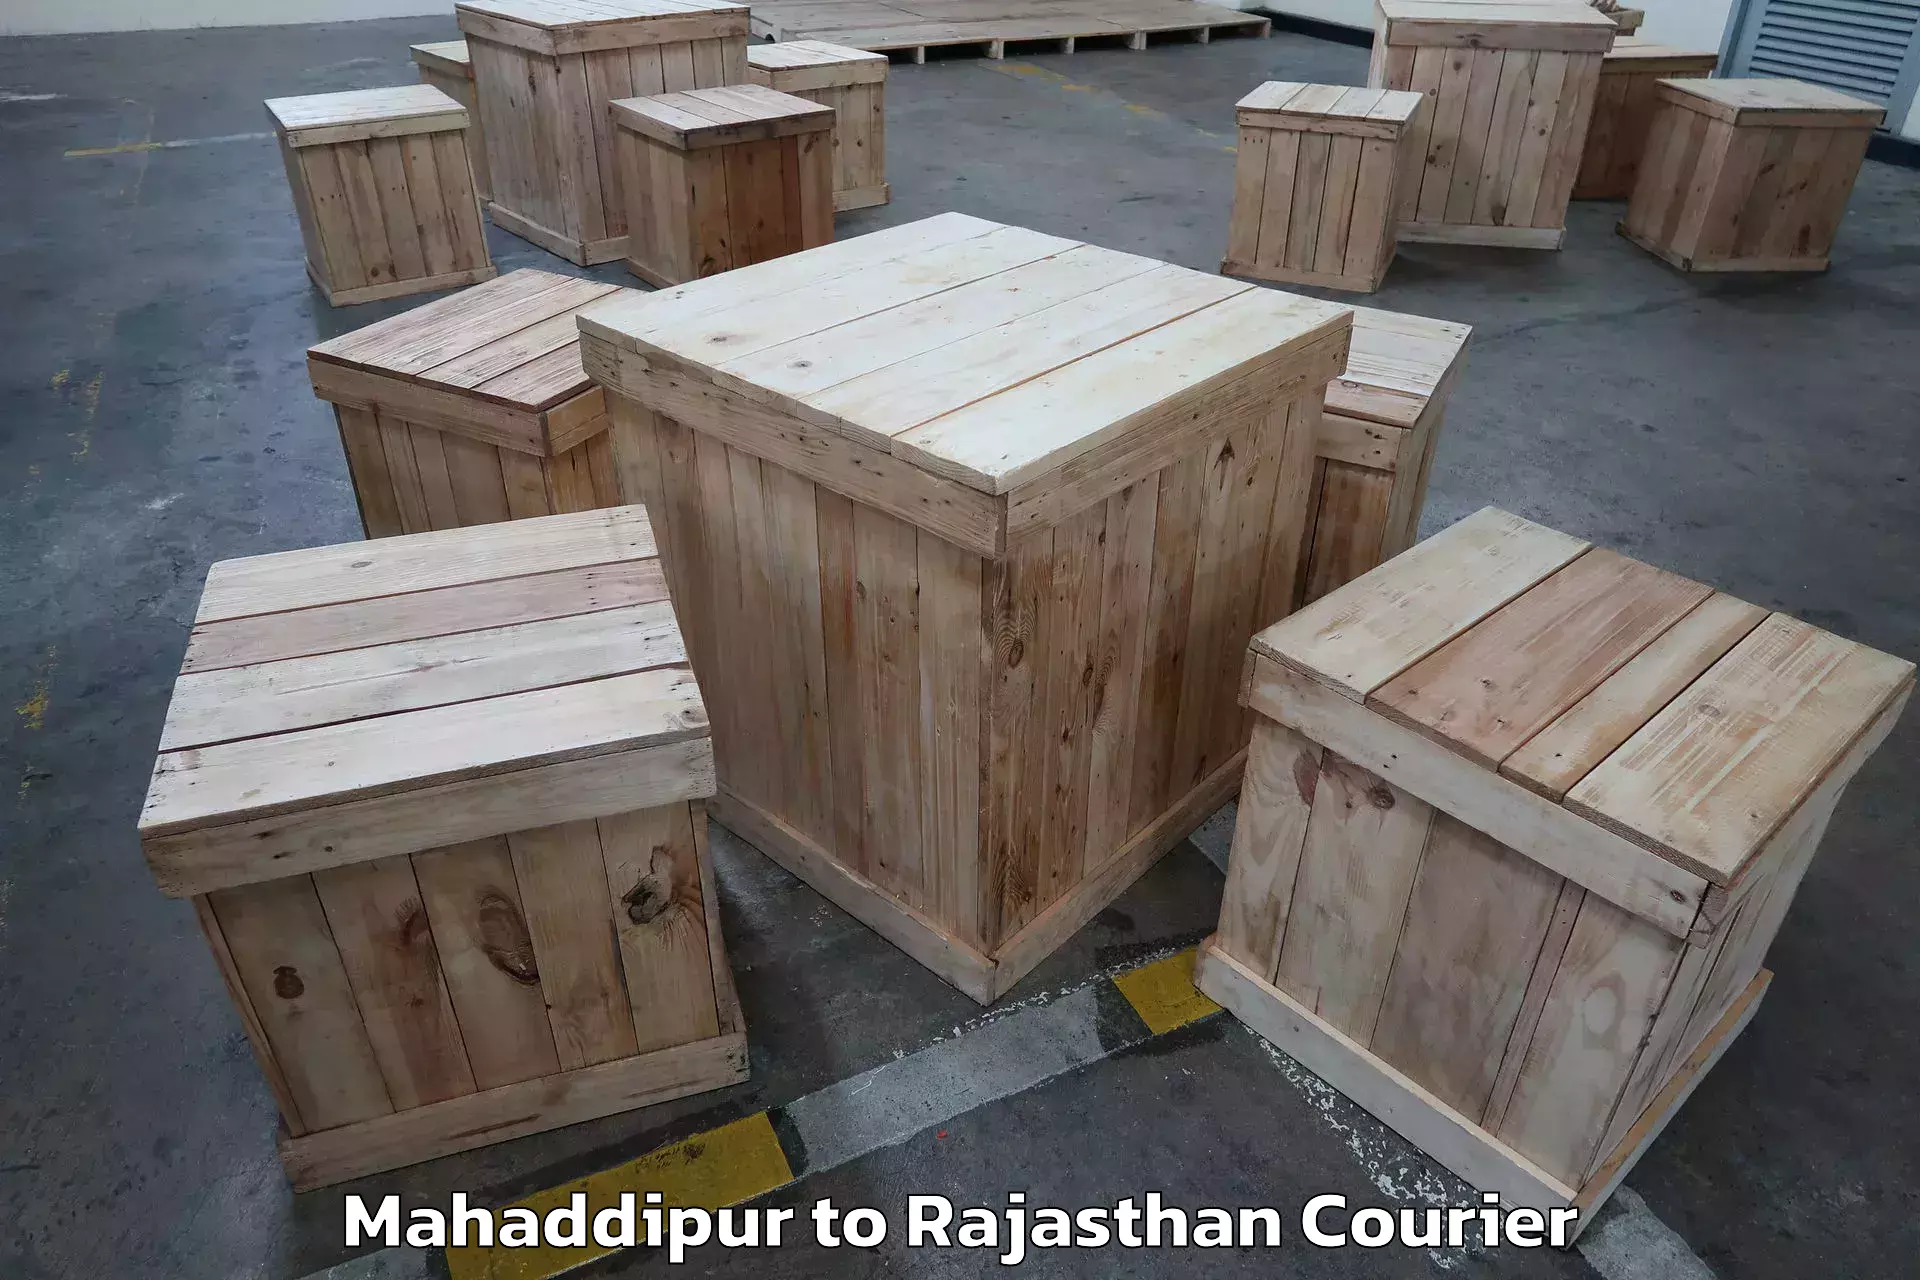 Trusted furniture transport Mahaddipur to Pratapgarh Rajasthan